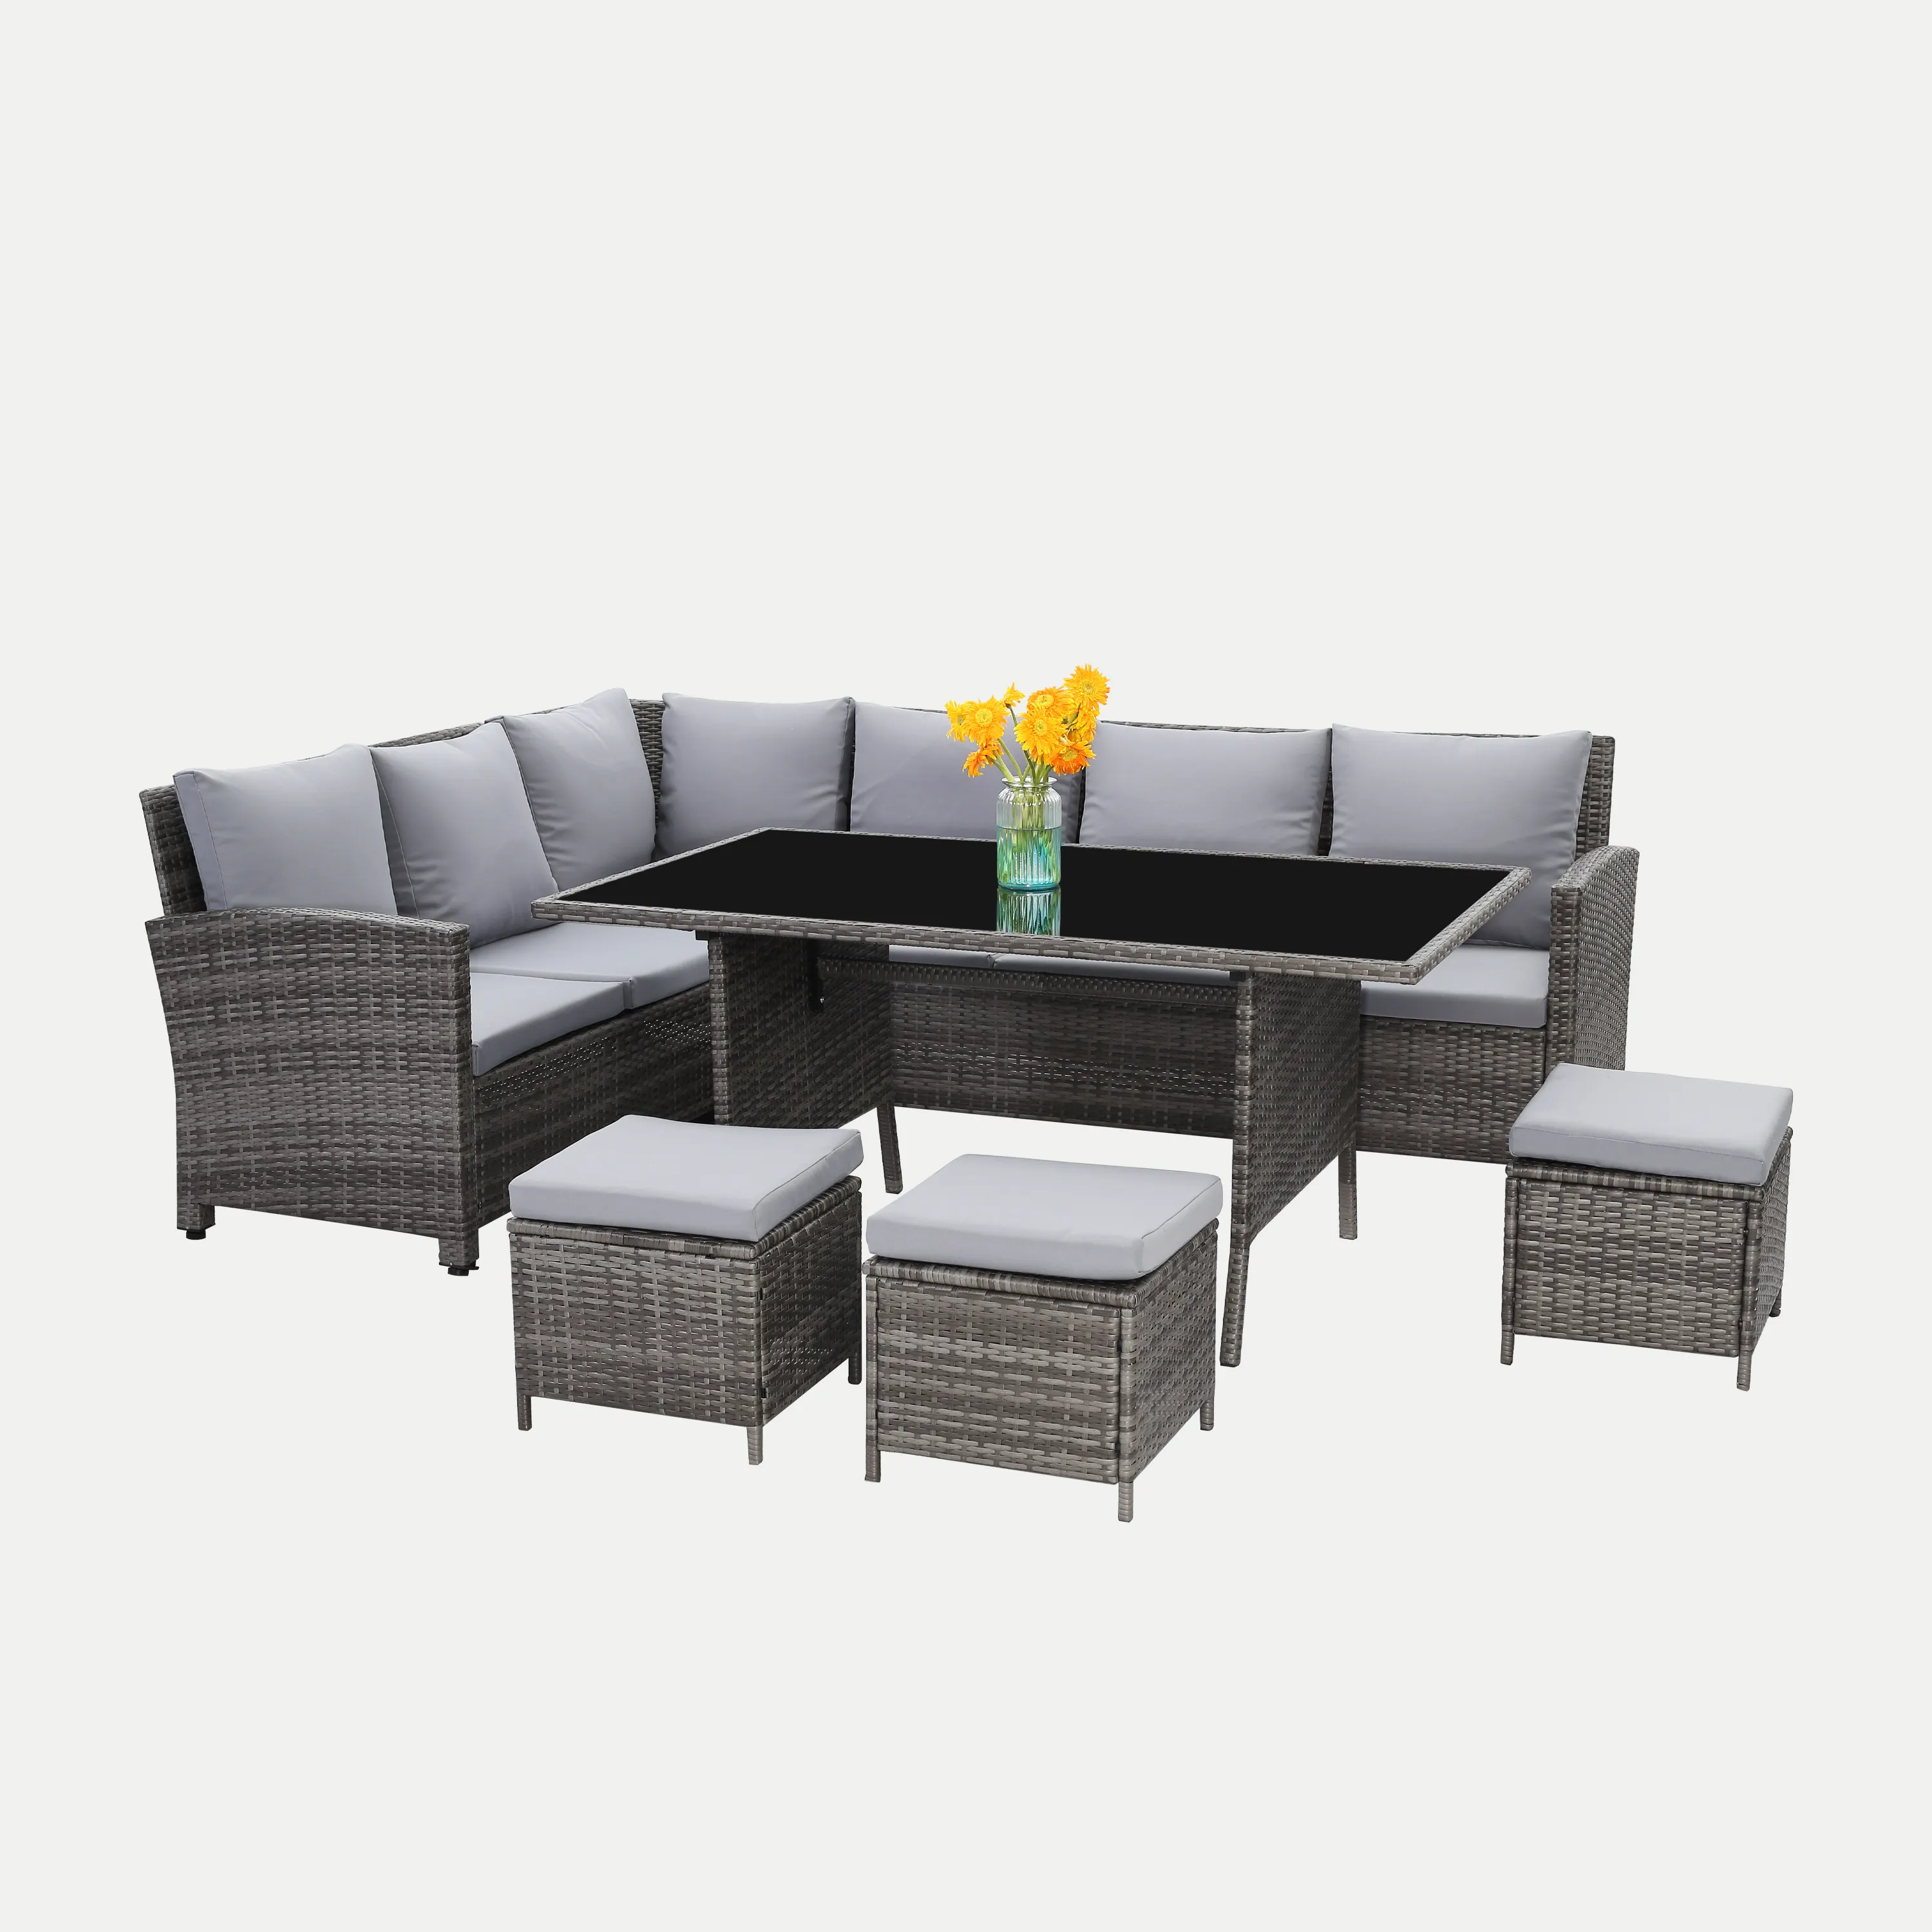 HB41.9504-Conjunto de muebles de mimbre para exterior, conjunto de sofá de jardín, muebles de ratán para Patio al aire libre, barato, 4 piezas